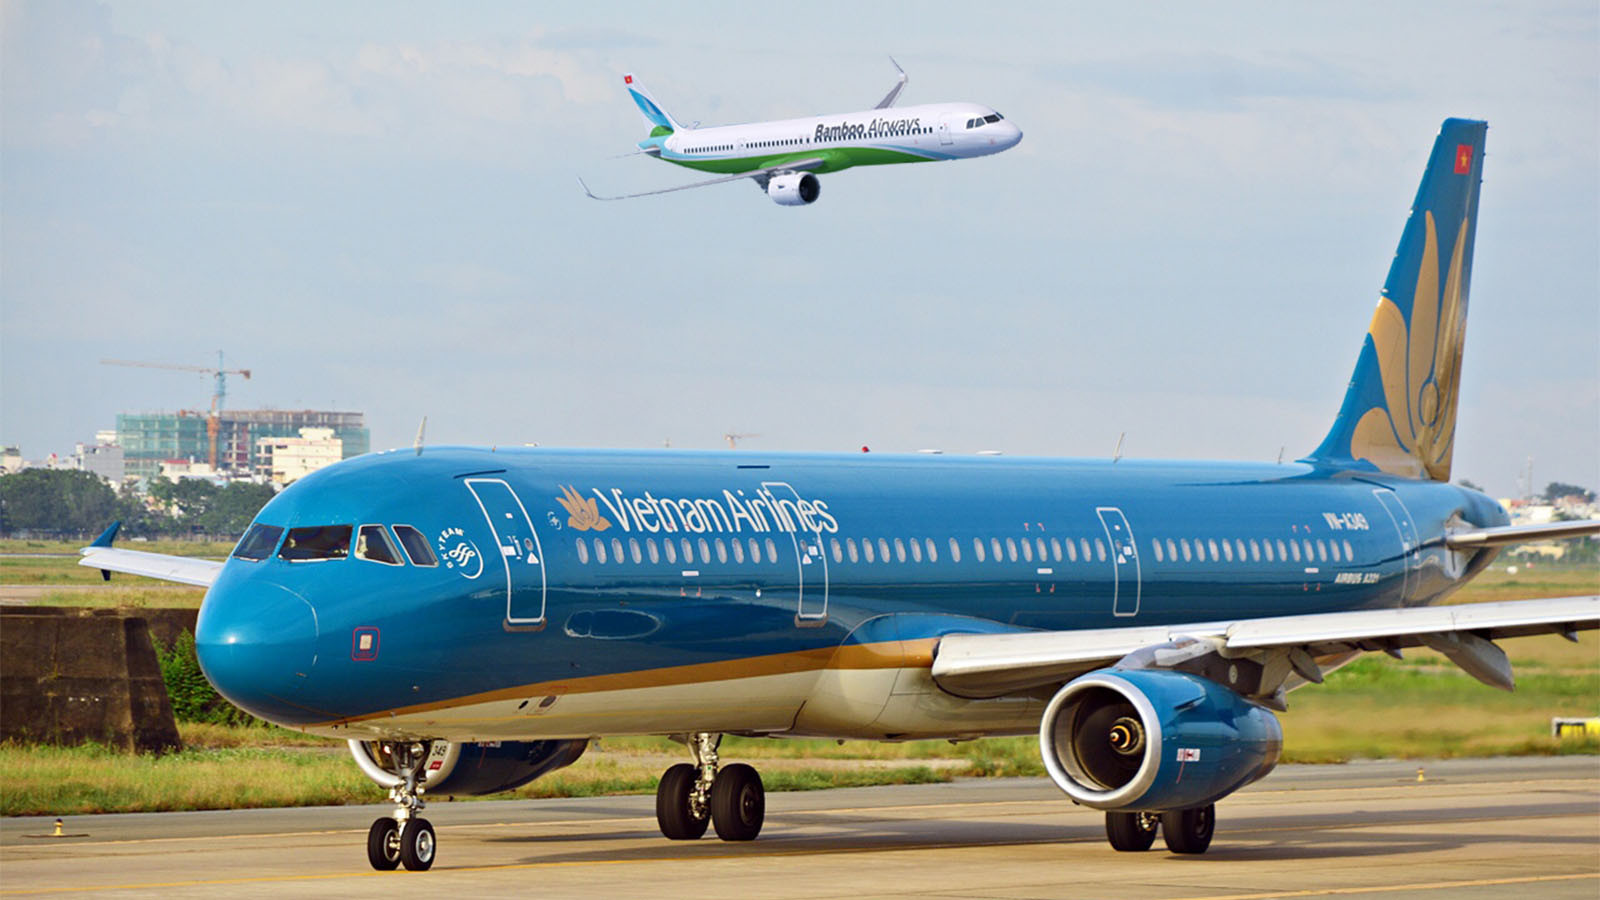 Hai hãng hàng không Việt Nam được sân bay Mỹ cấp slot (lượt cất, hạ cánh theo giờ) là Vietnam Airlines và Bamboo Airways.